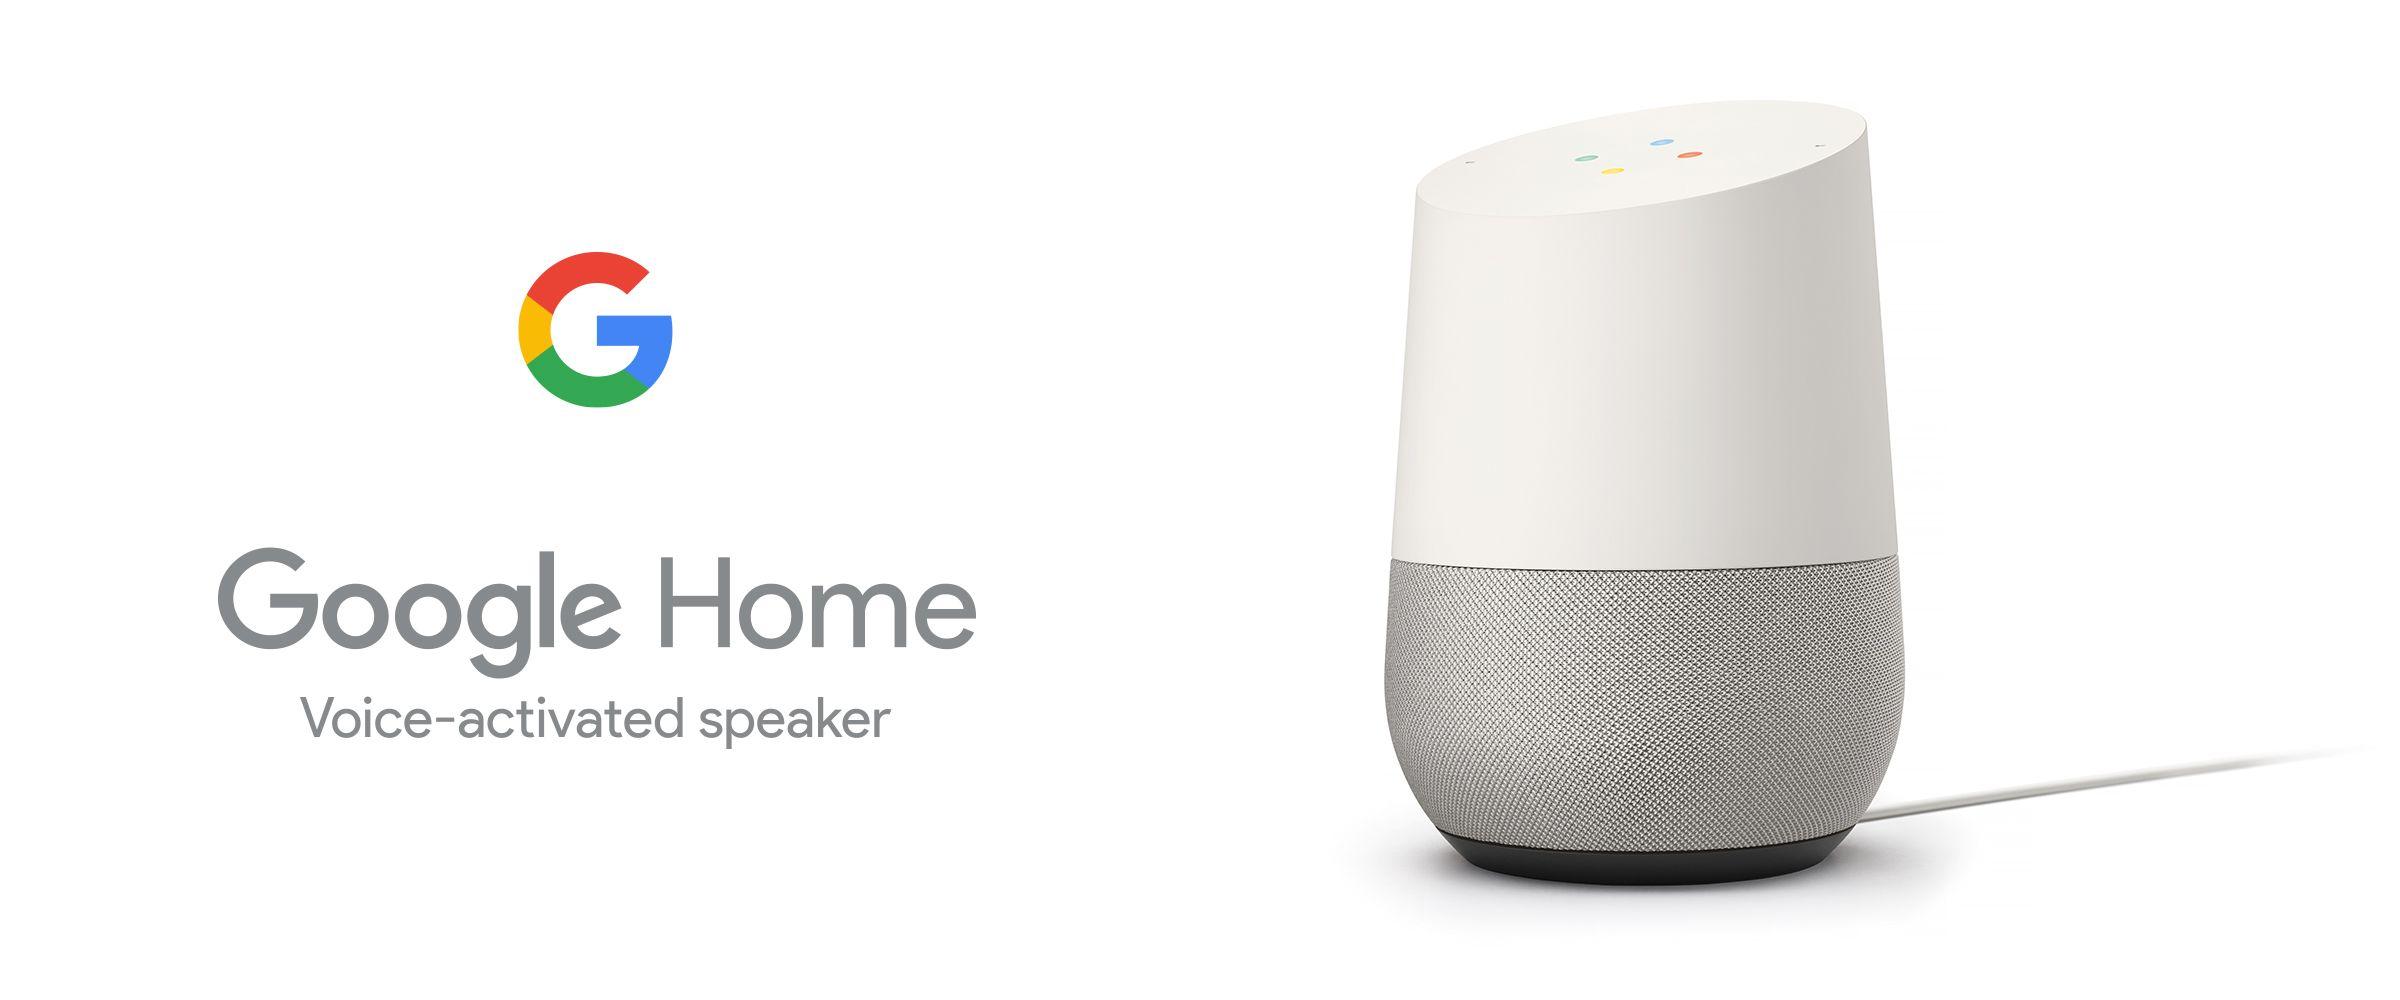 Google Voice Home Logo - Google home Logos